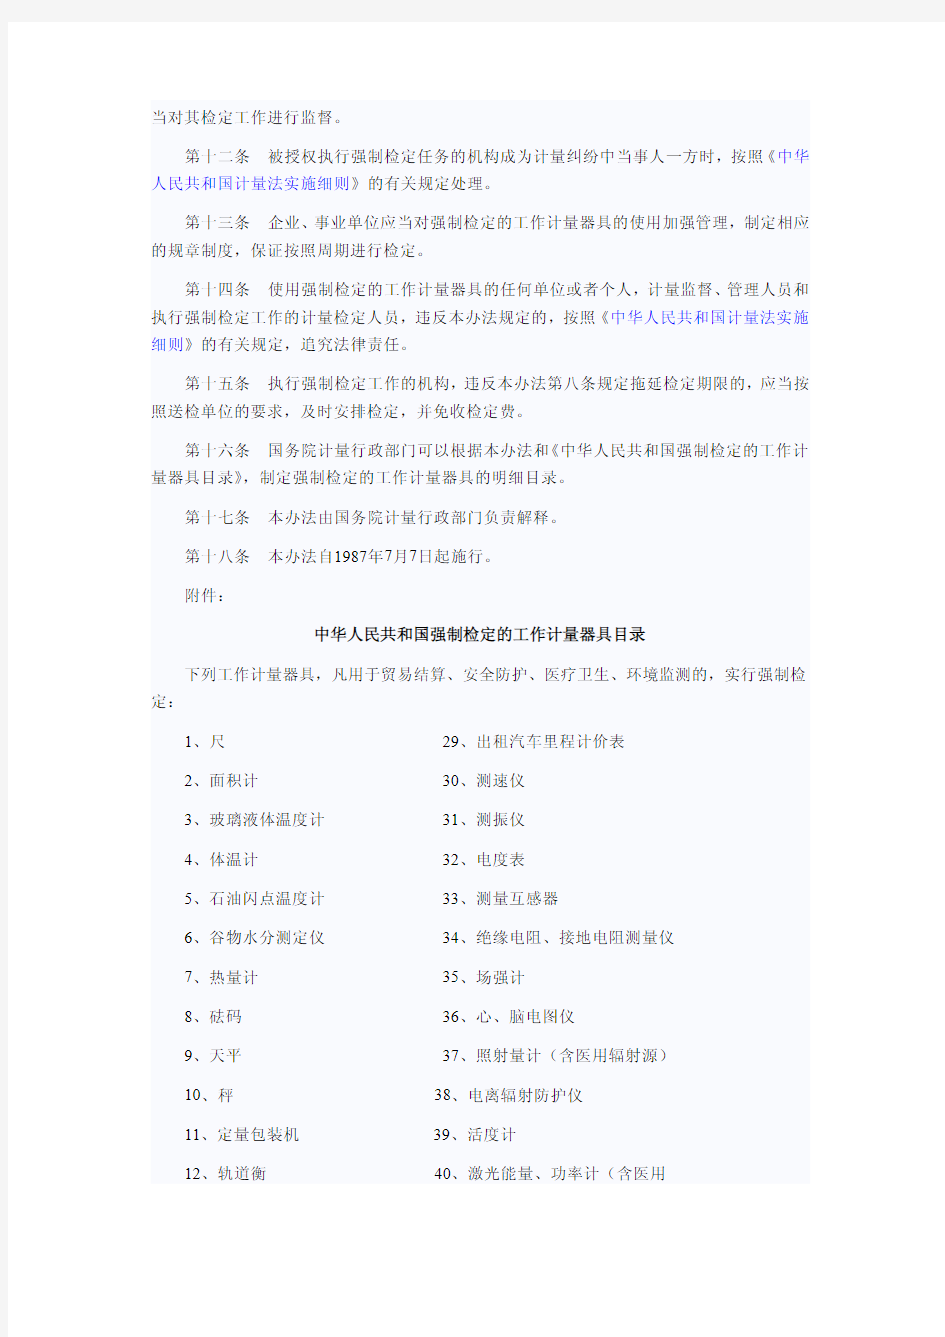 中华人民共和国强制检定的工作计量器具检定管理办法